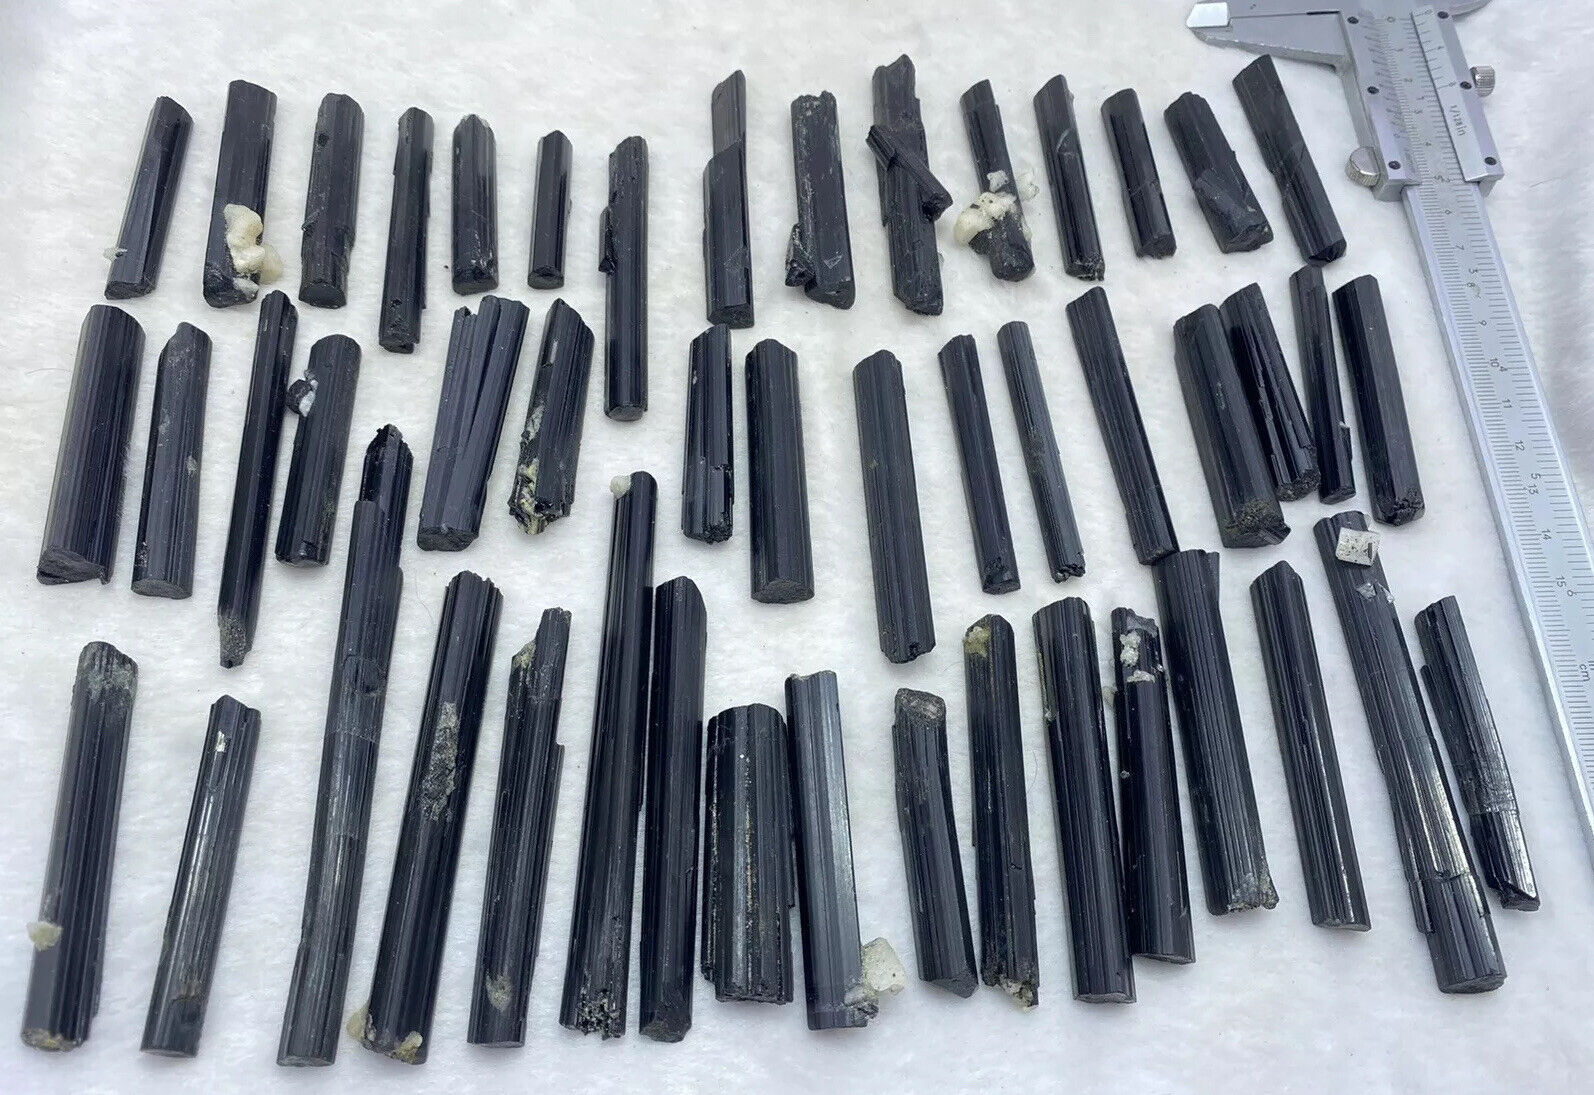 Largest Black Tourmaline crystals clusters 48 pieces 3.8-10.5 cm lustrous shiny